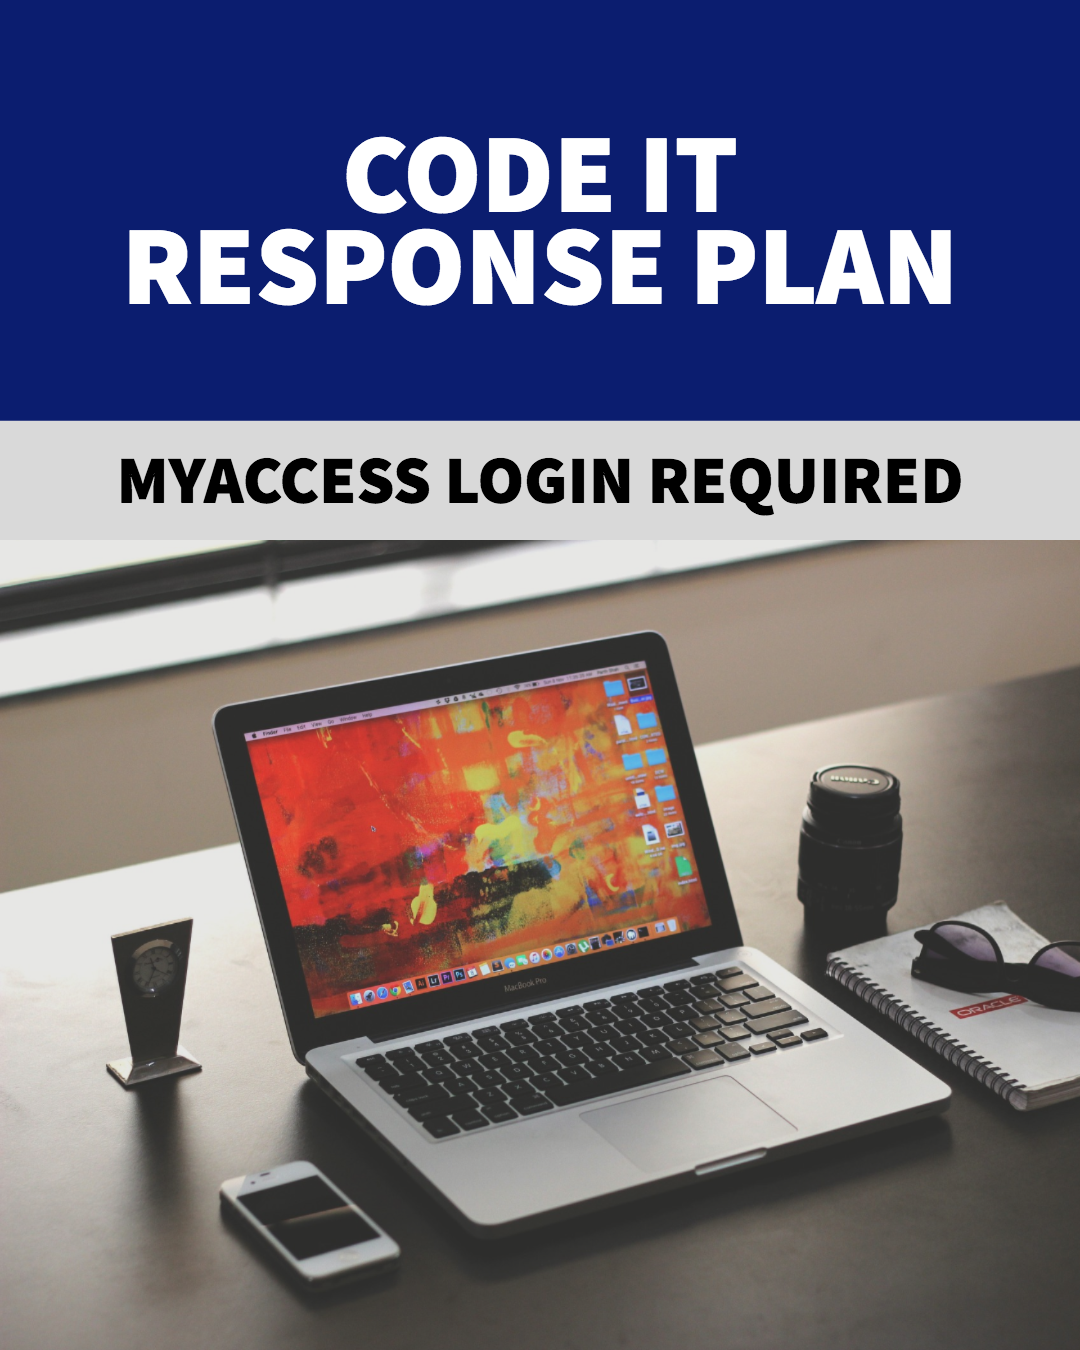 Code IT Response Plan